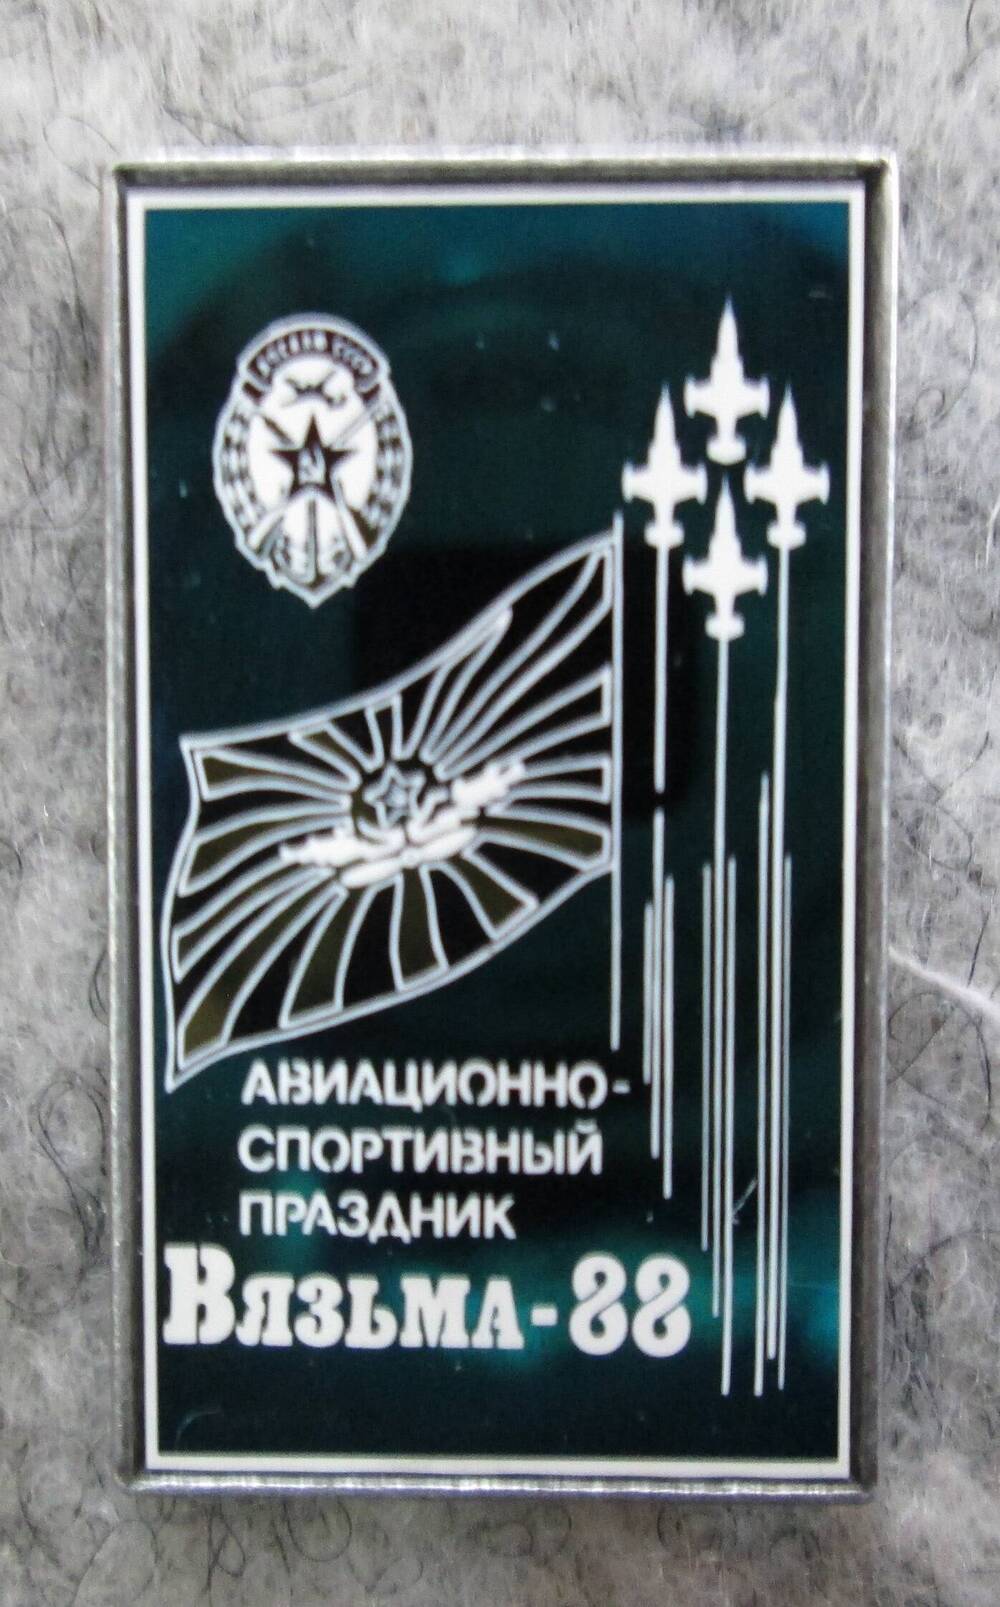 Значок Авиационно-спортивный праздник. Вязьма-88, 1988 г.